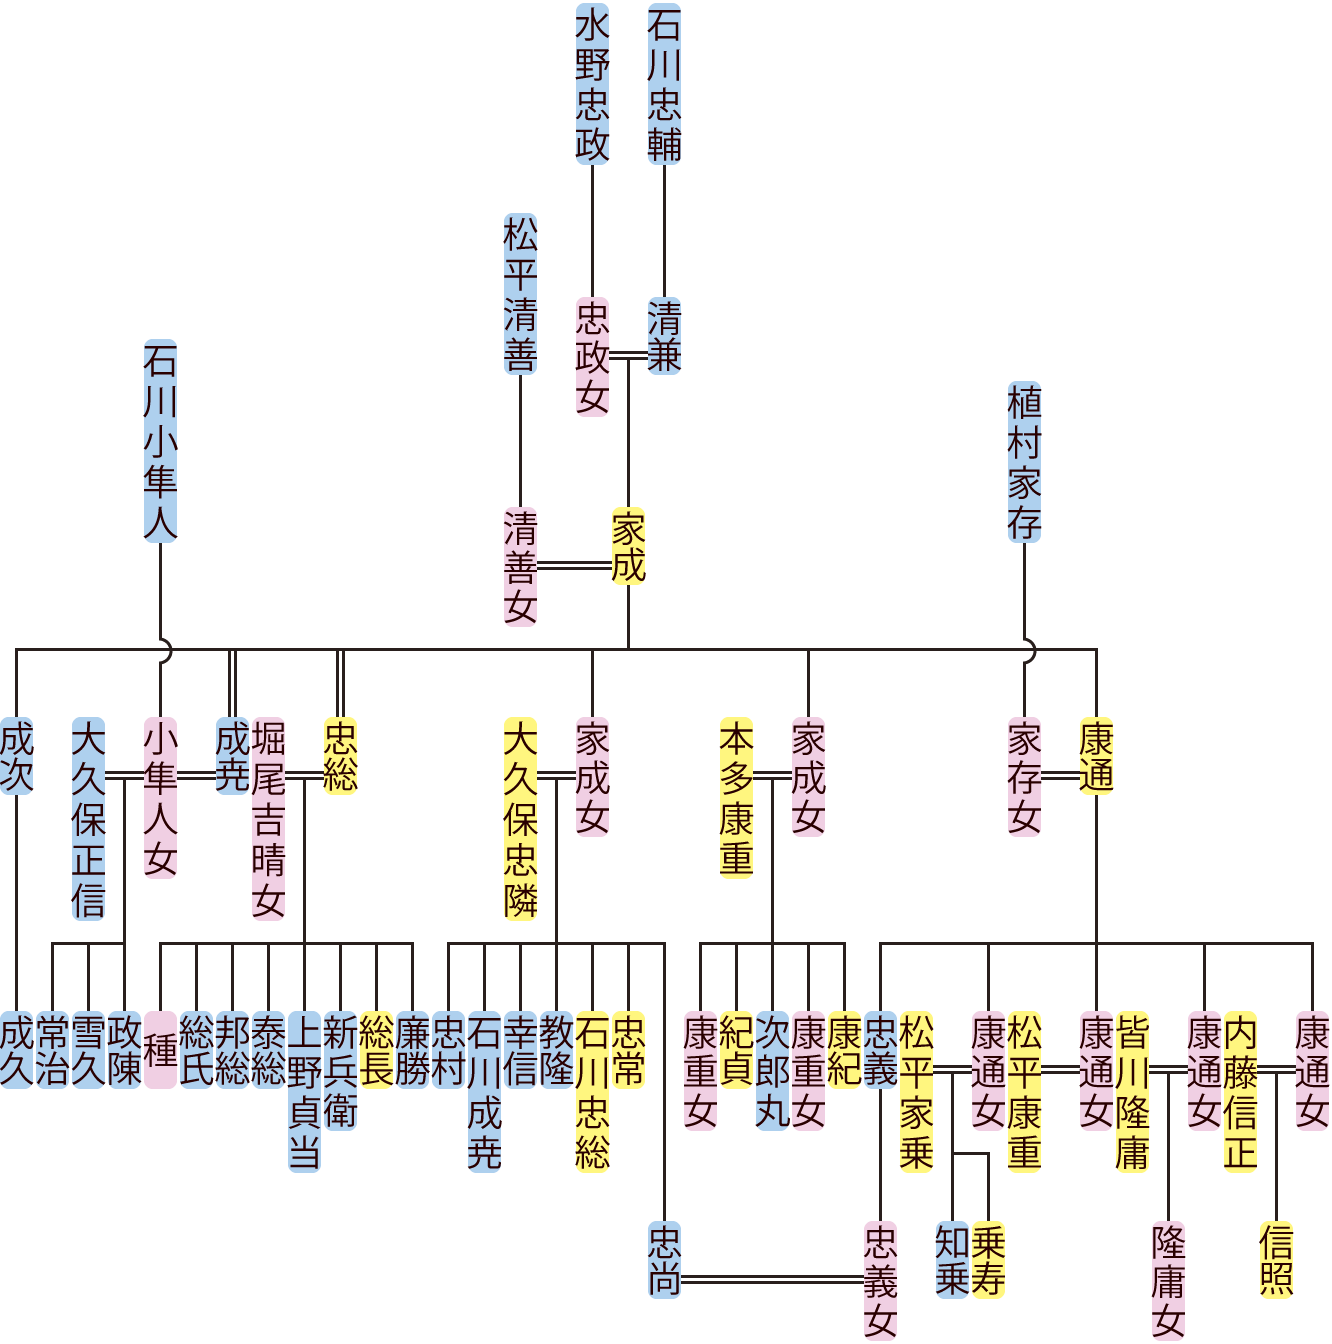 石川家成の系図